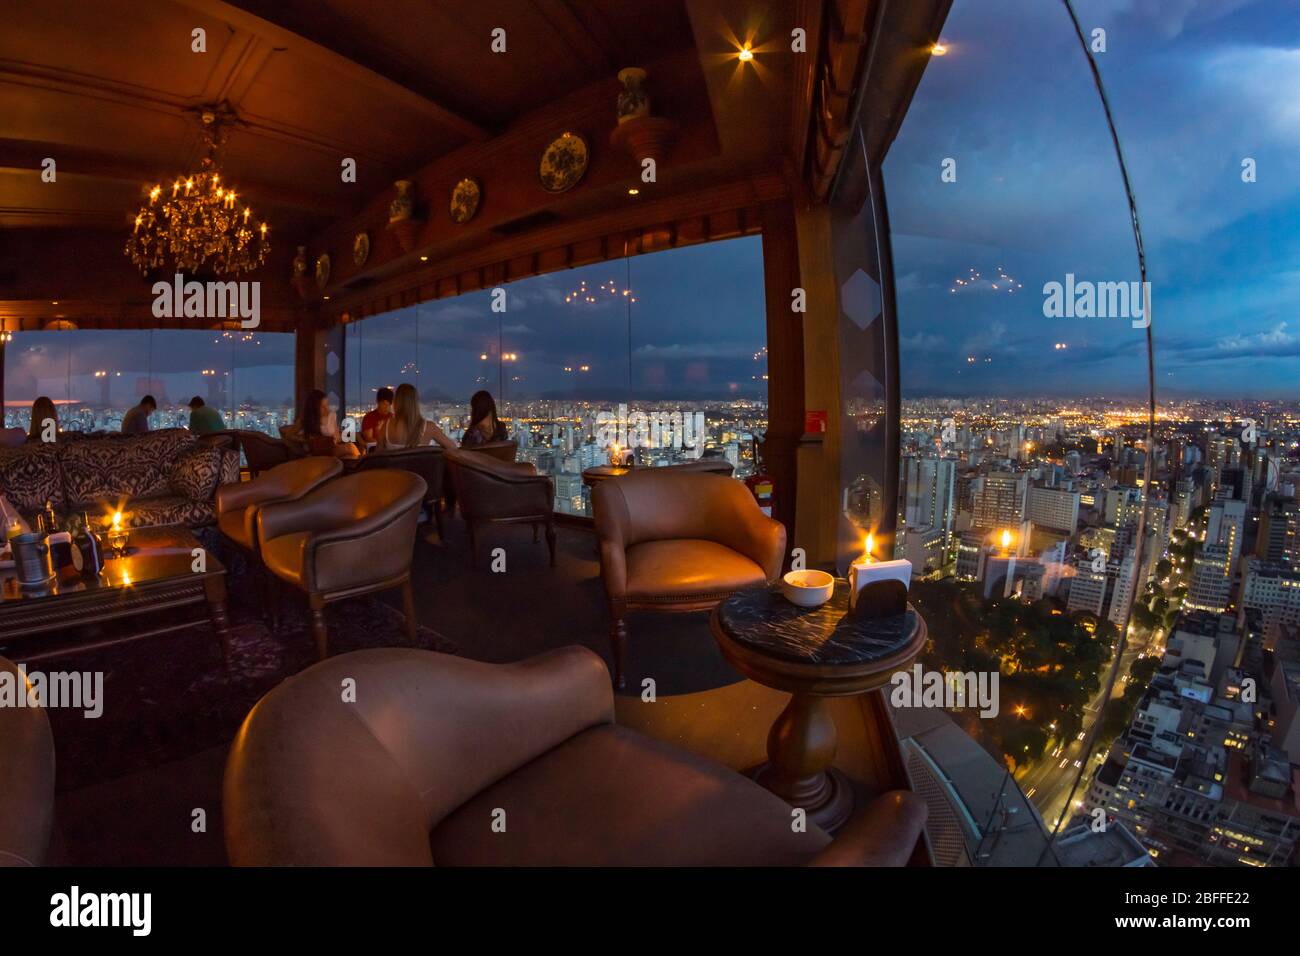 In cima all'edificio Italia, il grattacielo più alto di San Paolo, un bel bar sul tetto invita a un drink e una bella vista sulle luci della città. Foto Stock